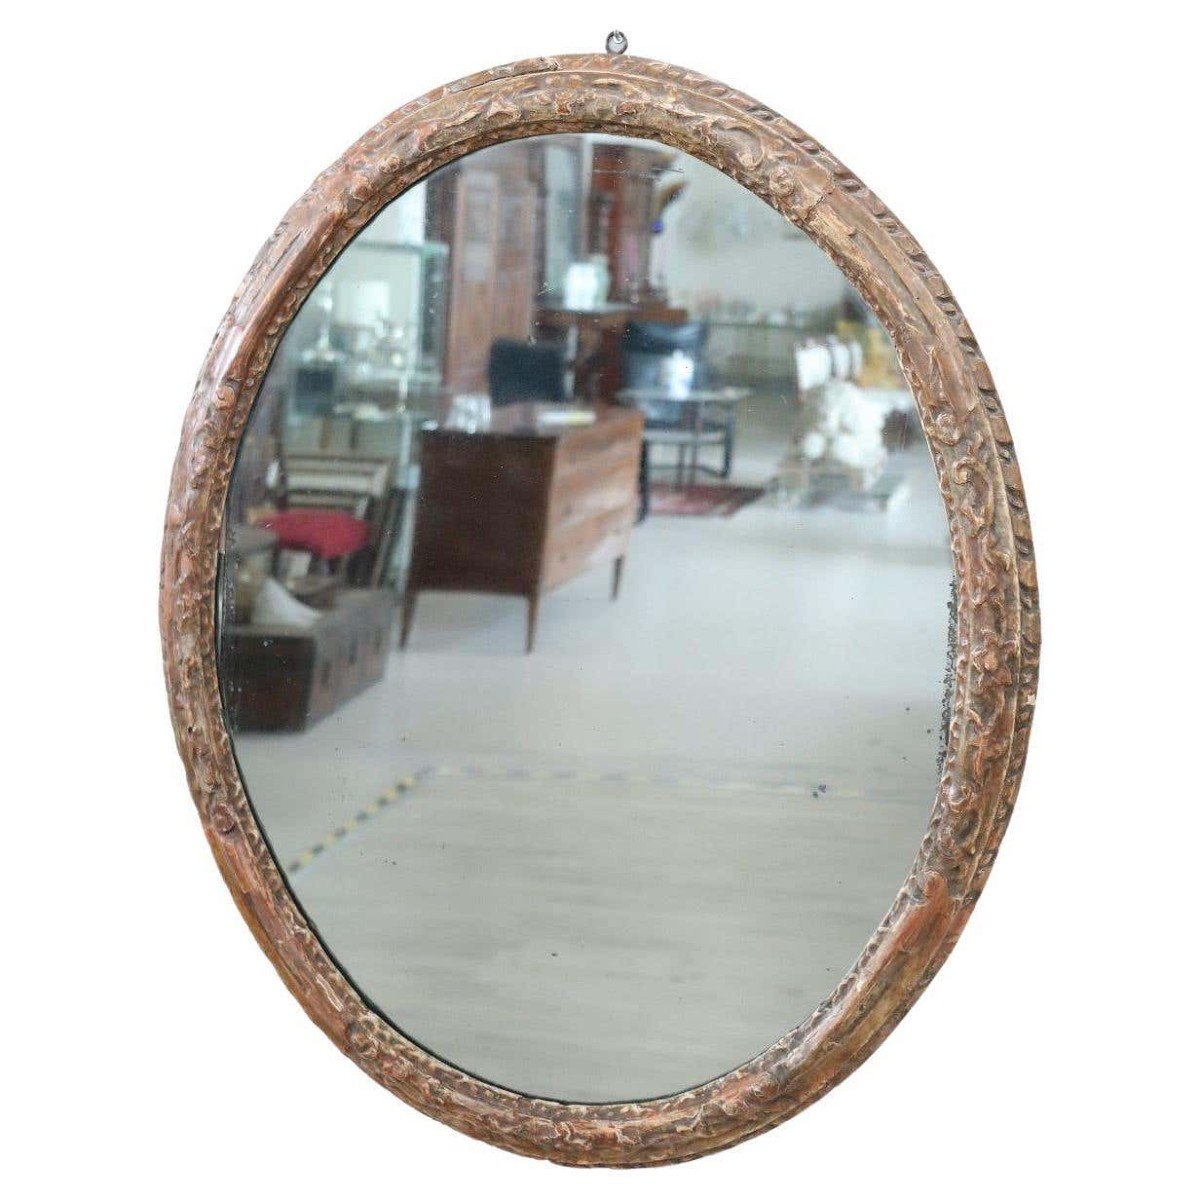 Specchio da parete antico in legno intagliato, fine XVII secolo